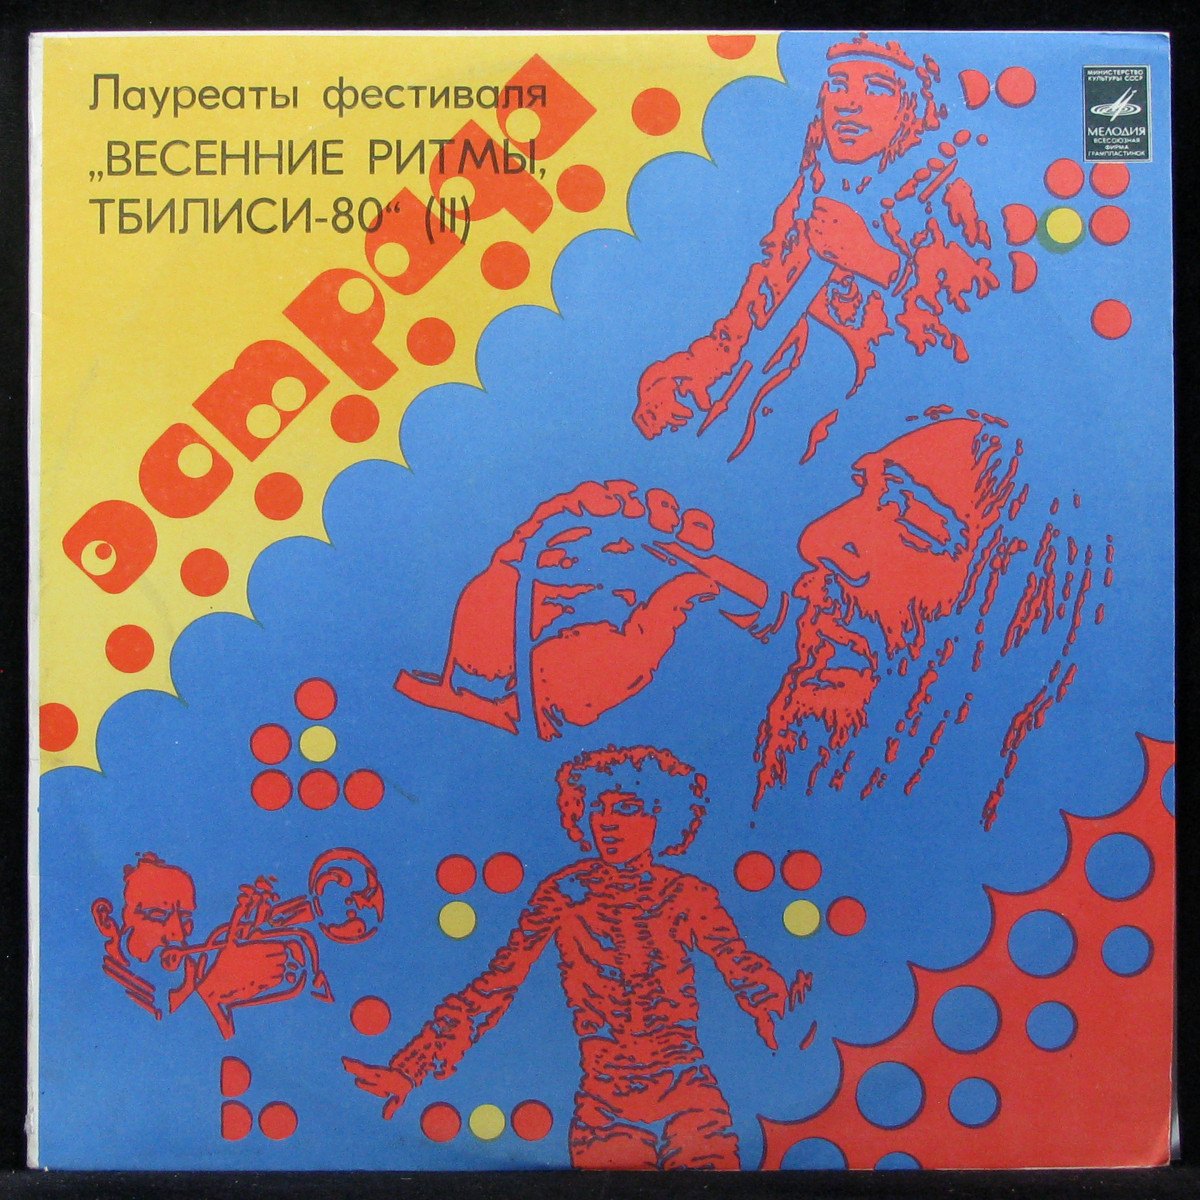 LP V/A — Весенние Ритмы, Тбилиси-80 (II) фото